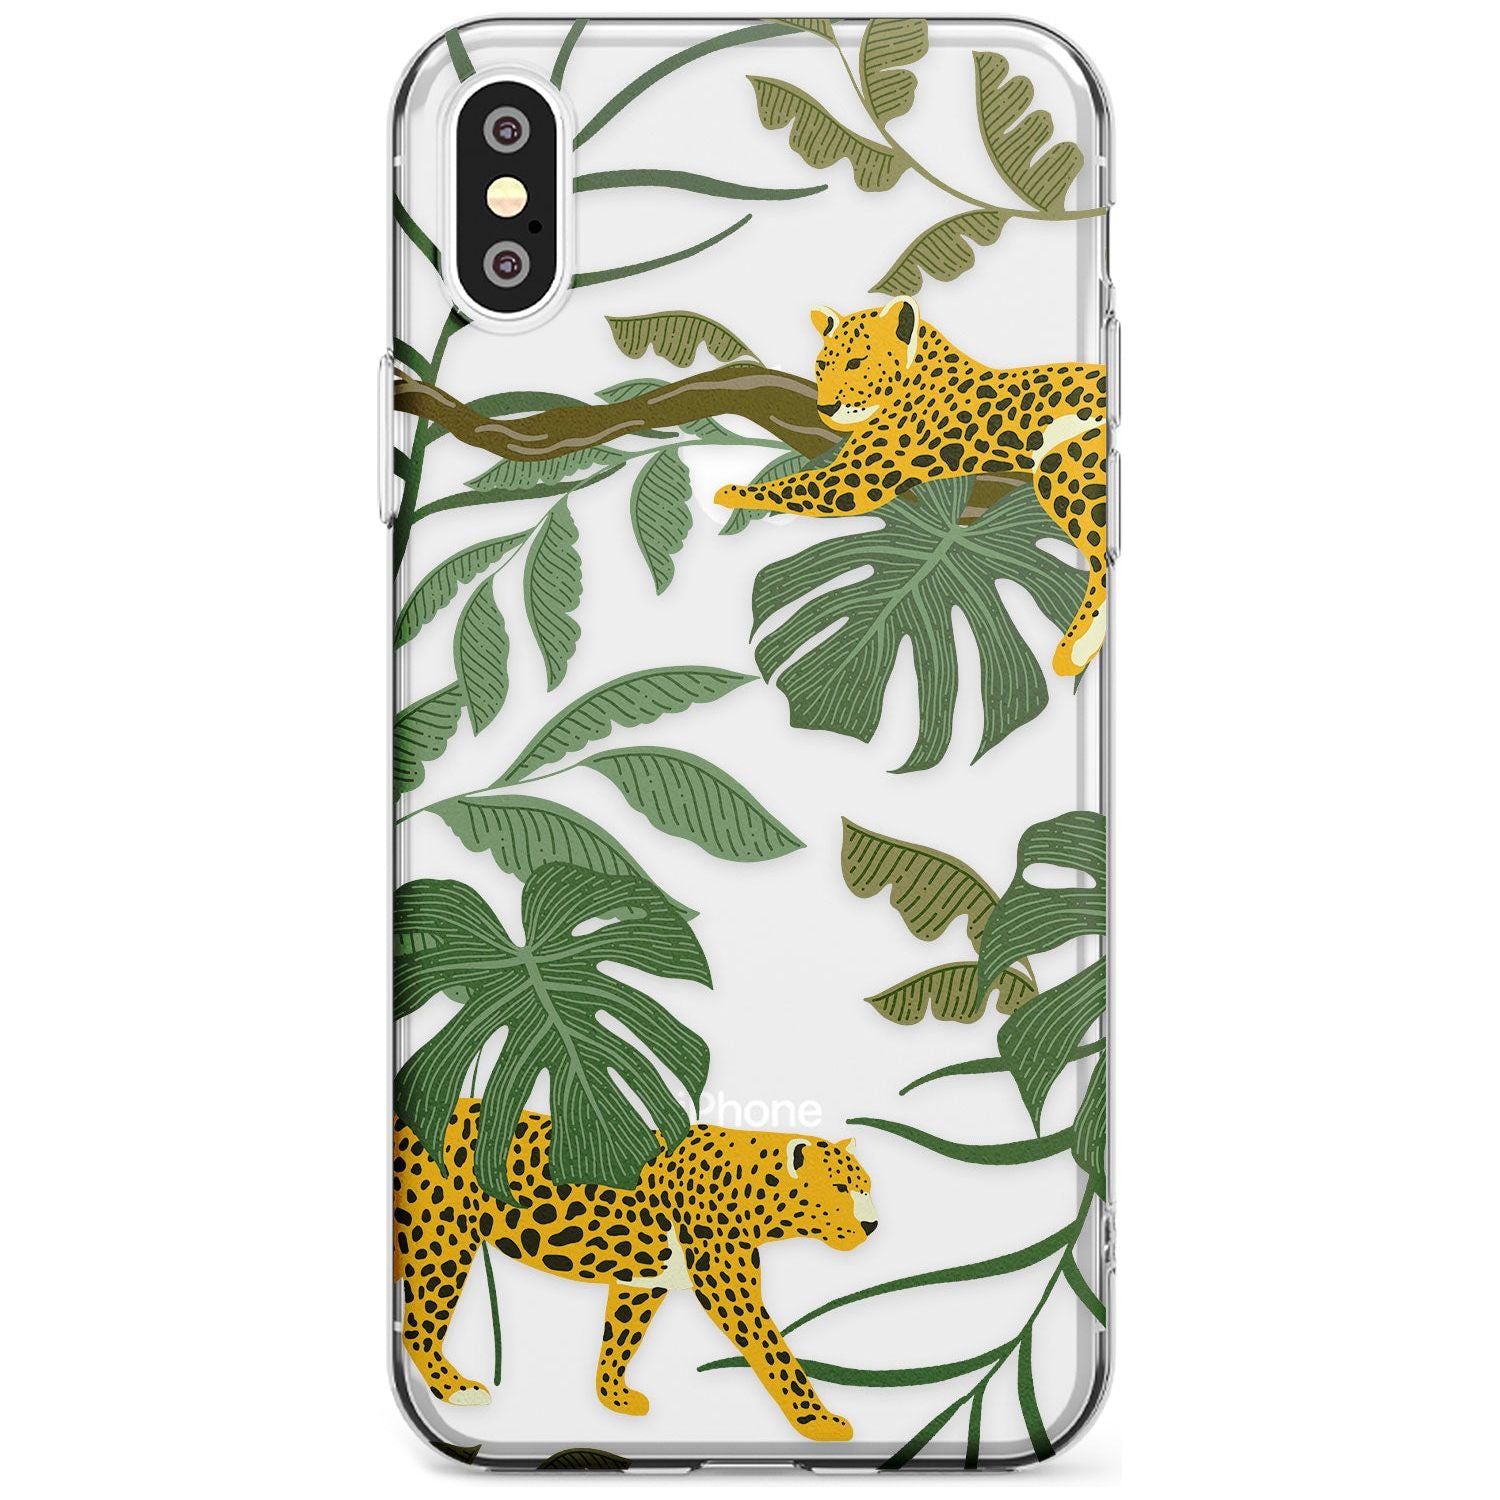 Two Jaguars & Foliage Jungle Cat Pattern Slim TPU Phone Case Warehouse X XS Max XR